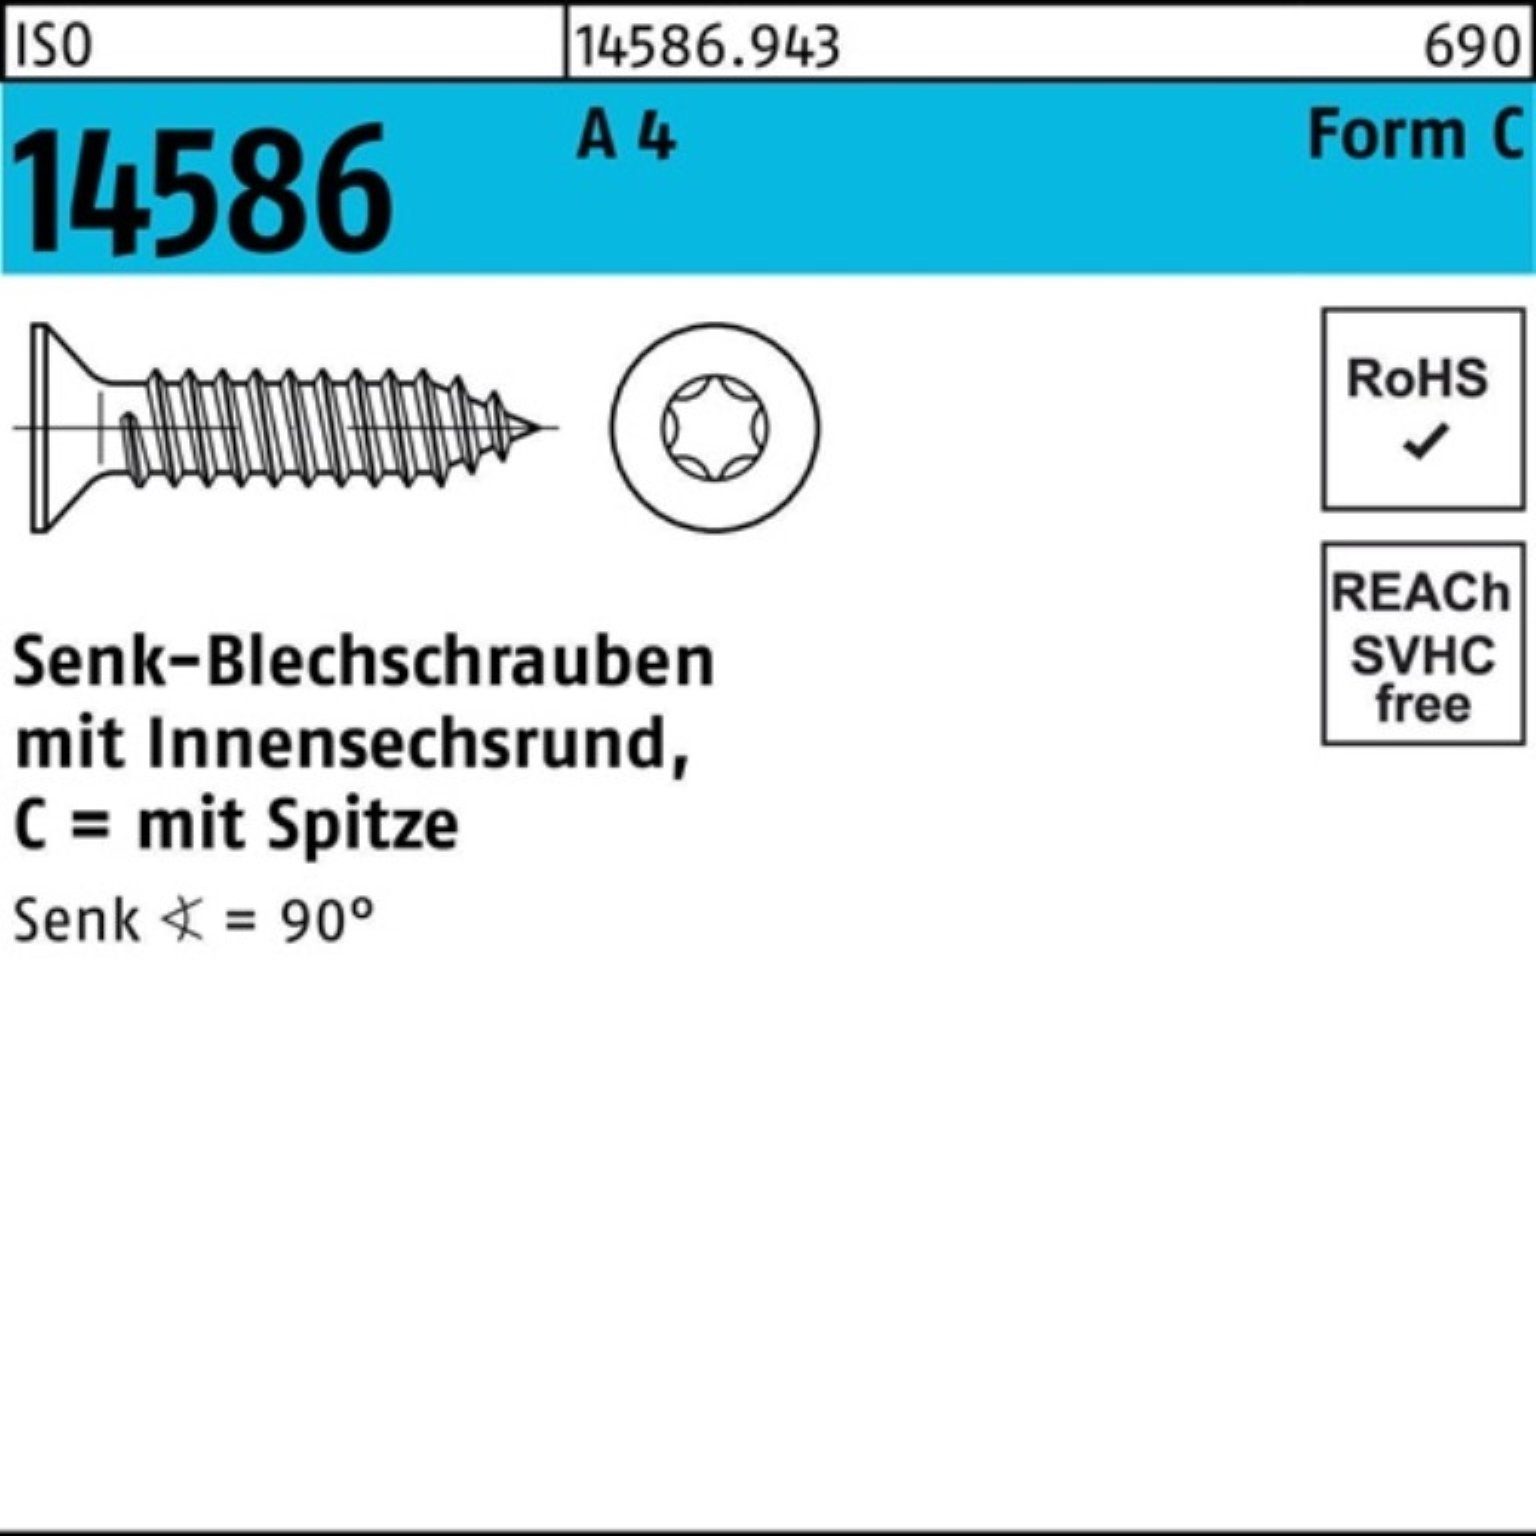 Pack Senkblechschraube Reyher Schraube ISR/Spitze 14586 500 500er 13-T25 4 A 5,5x ISO